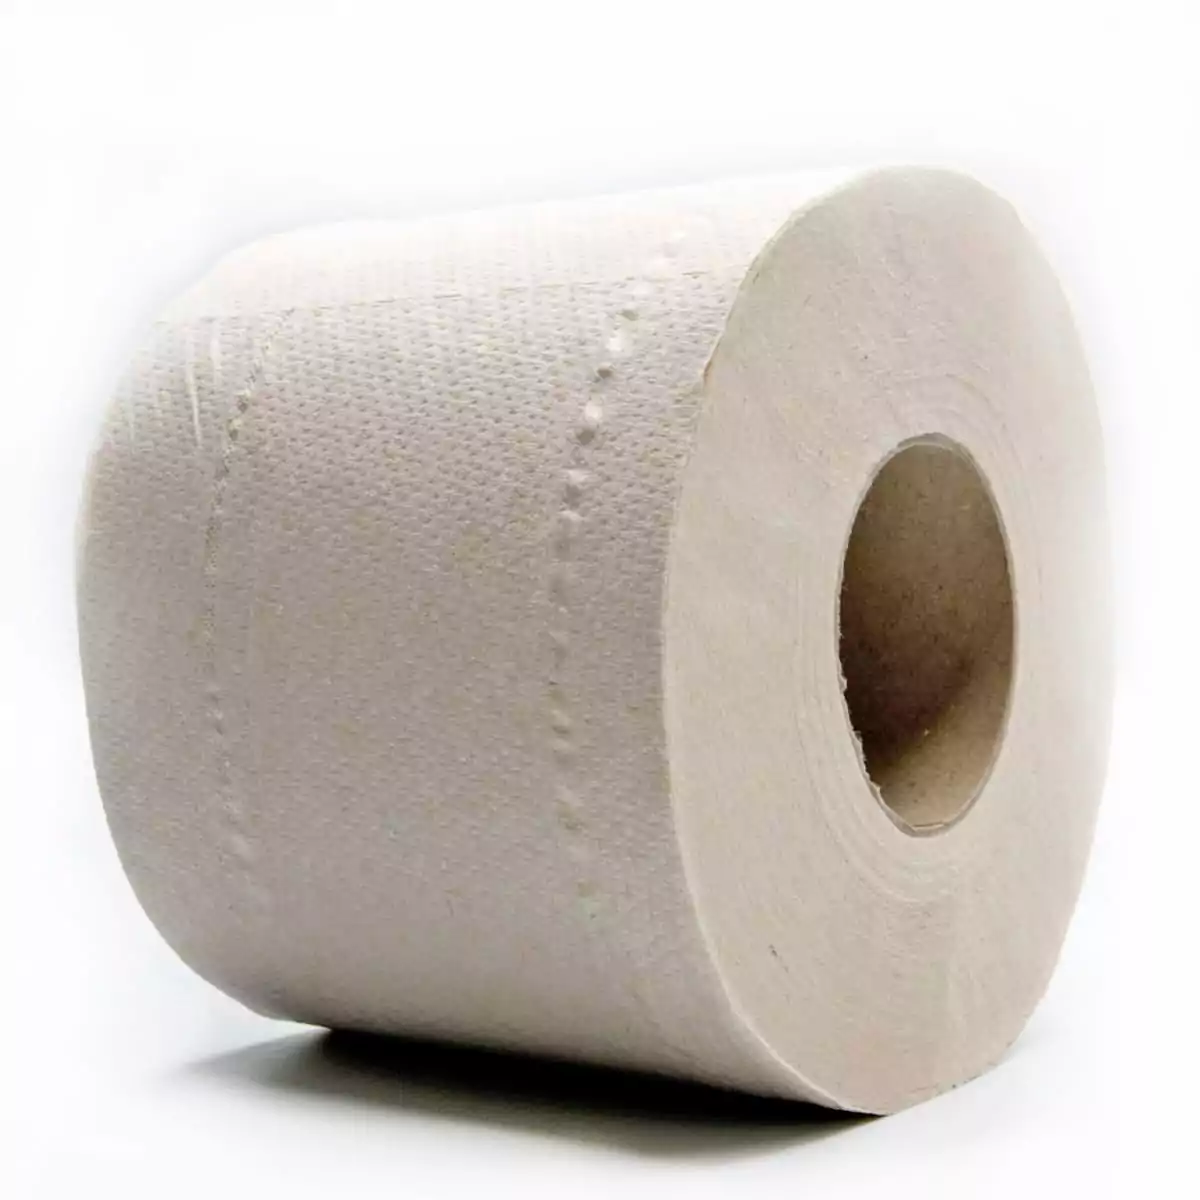 Detalle rollo papel higiénico sin blanquear 100% reciclado